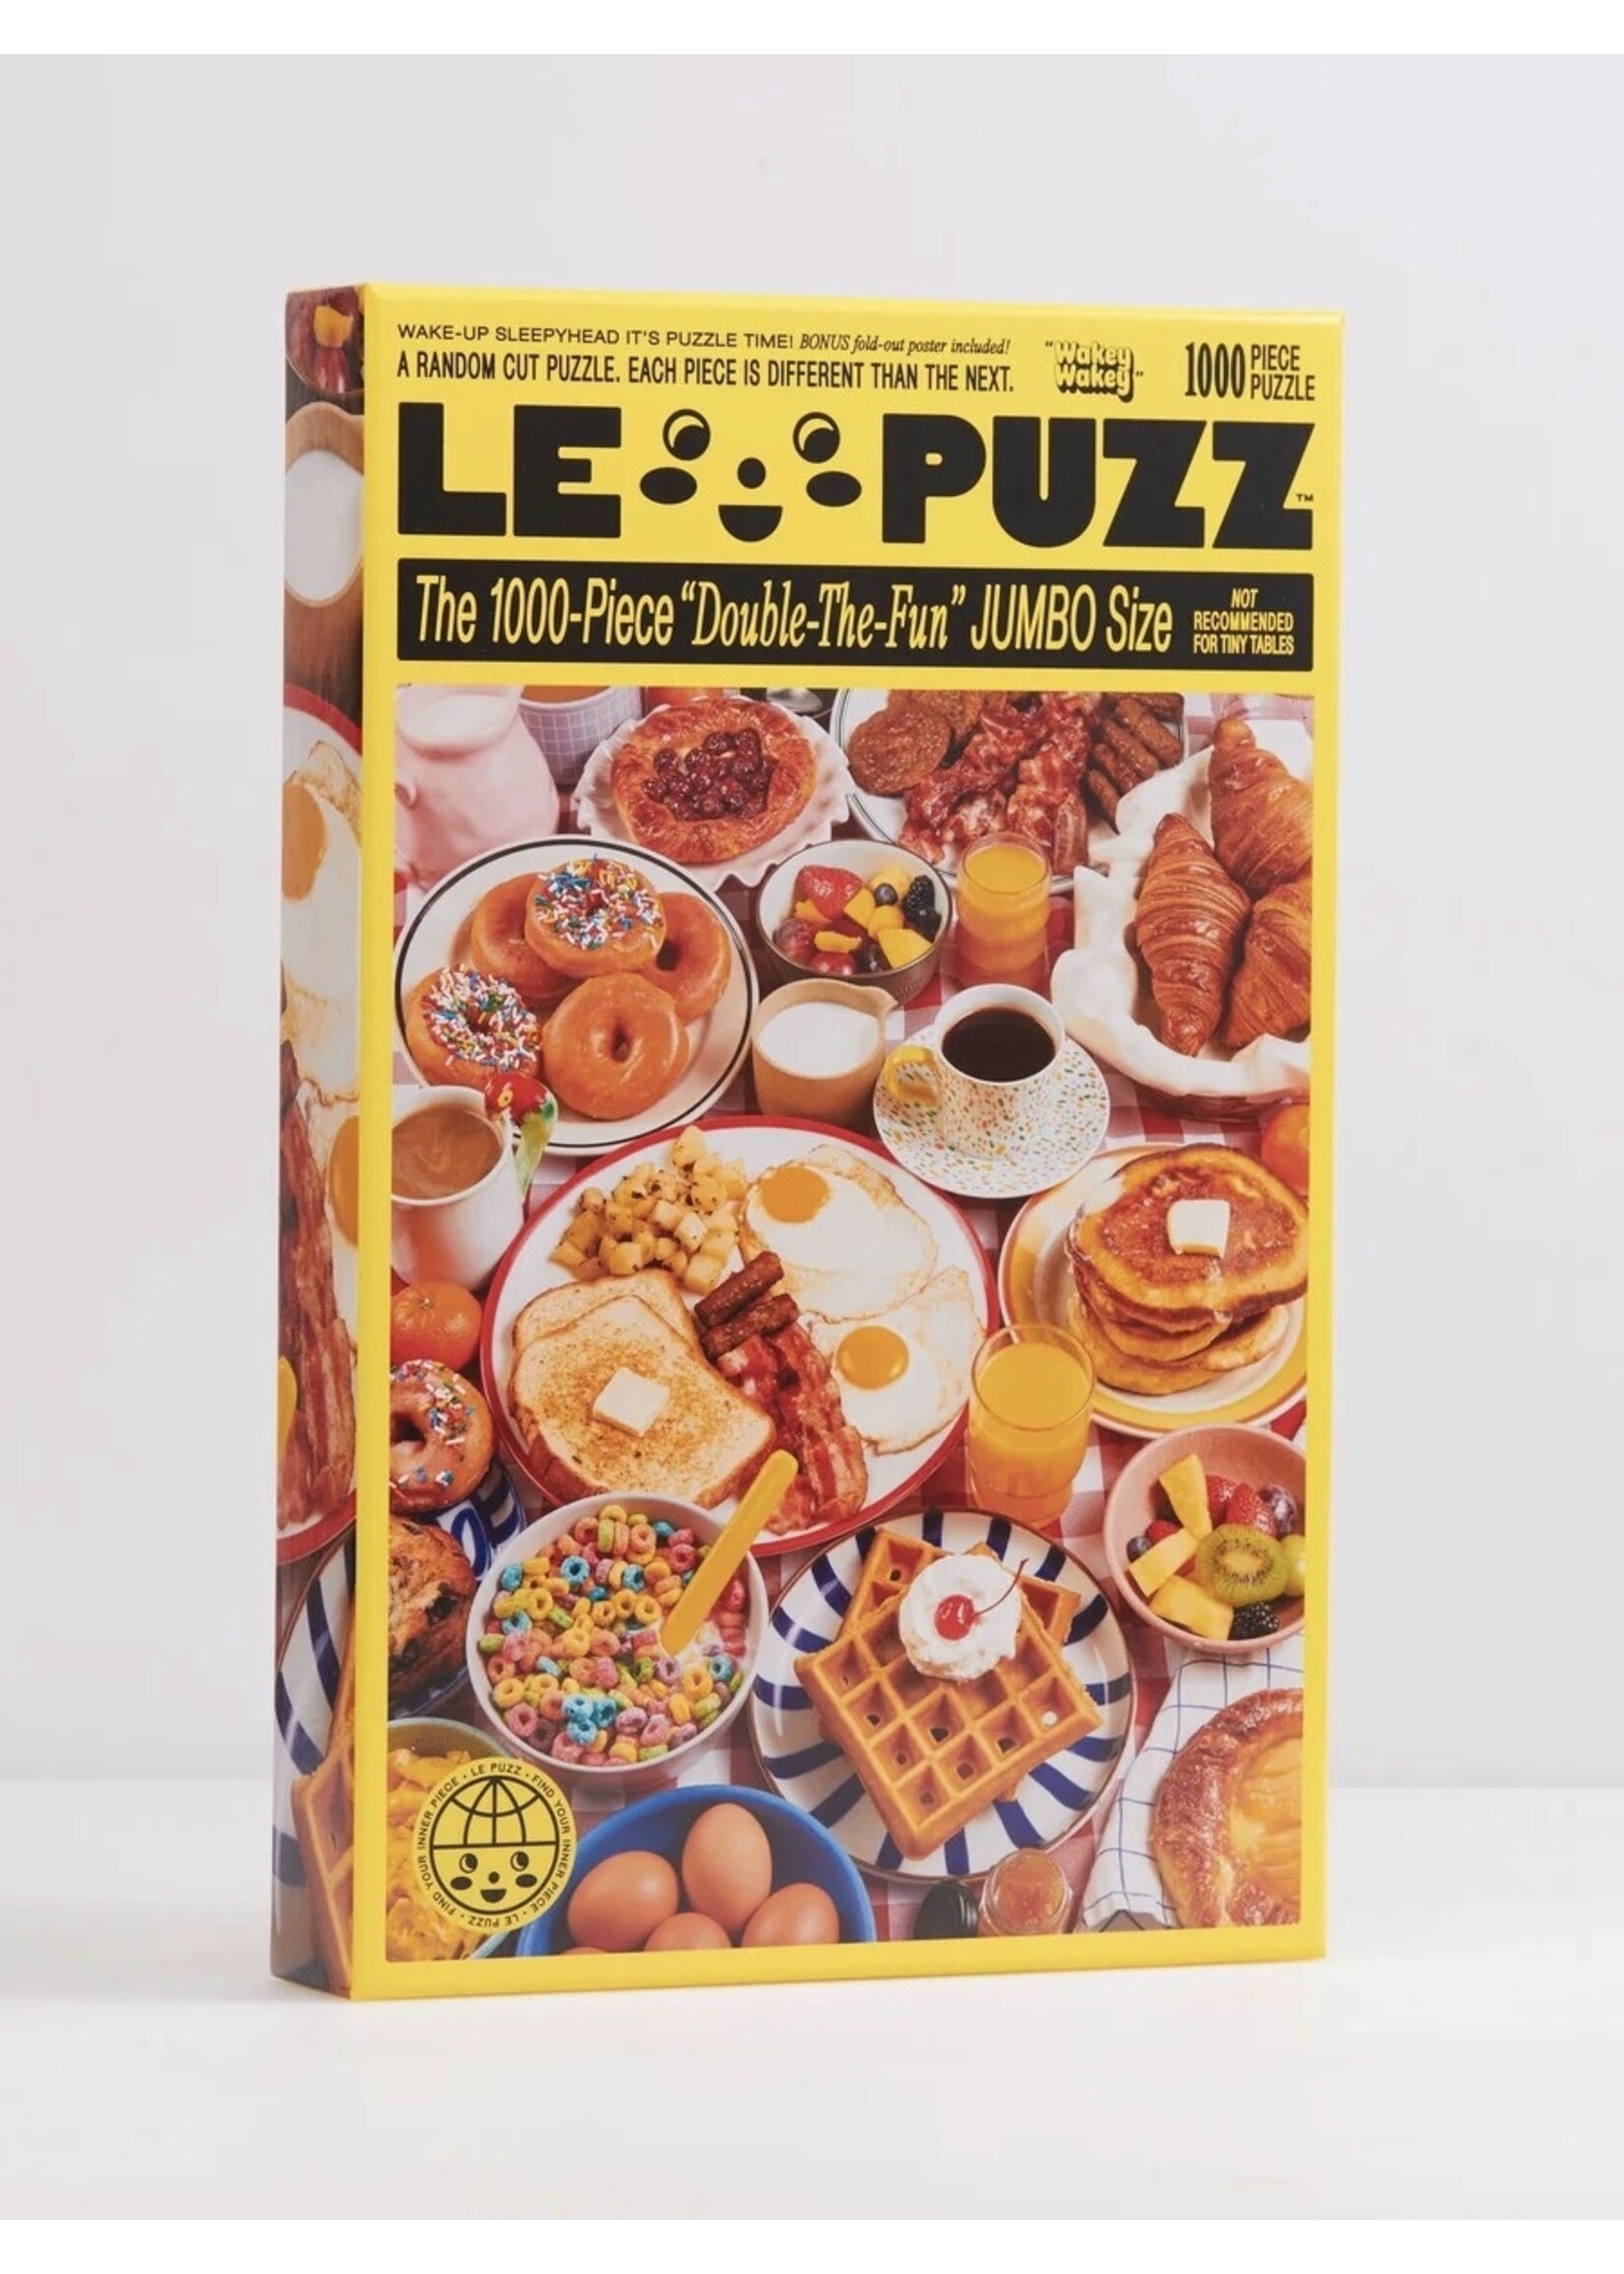 Le Puzz Casse-têtes "1000 pièces" par LE PUZZ